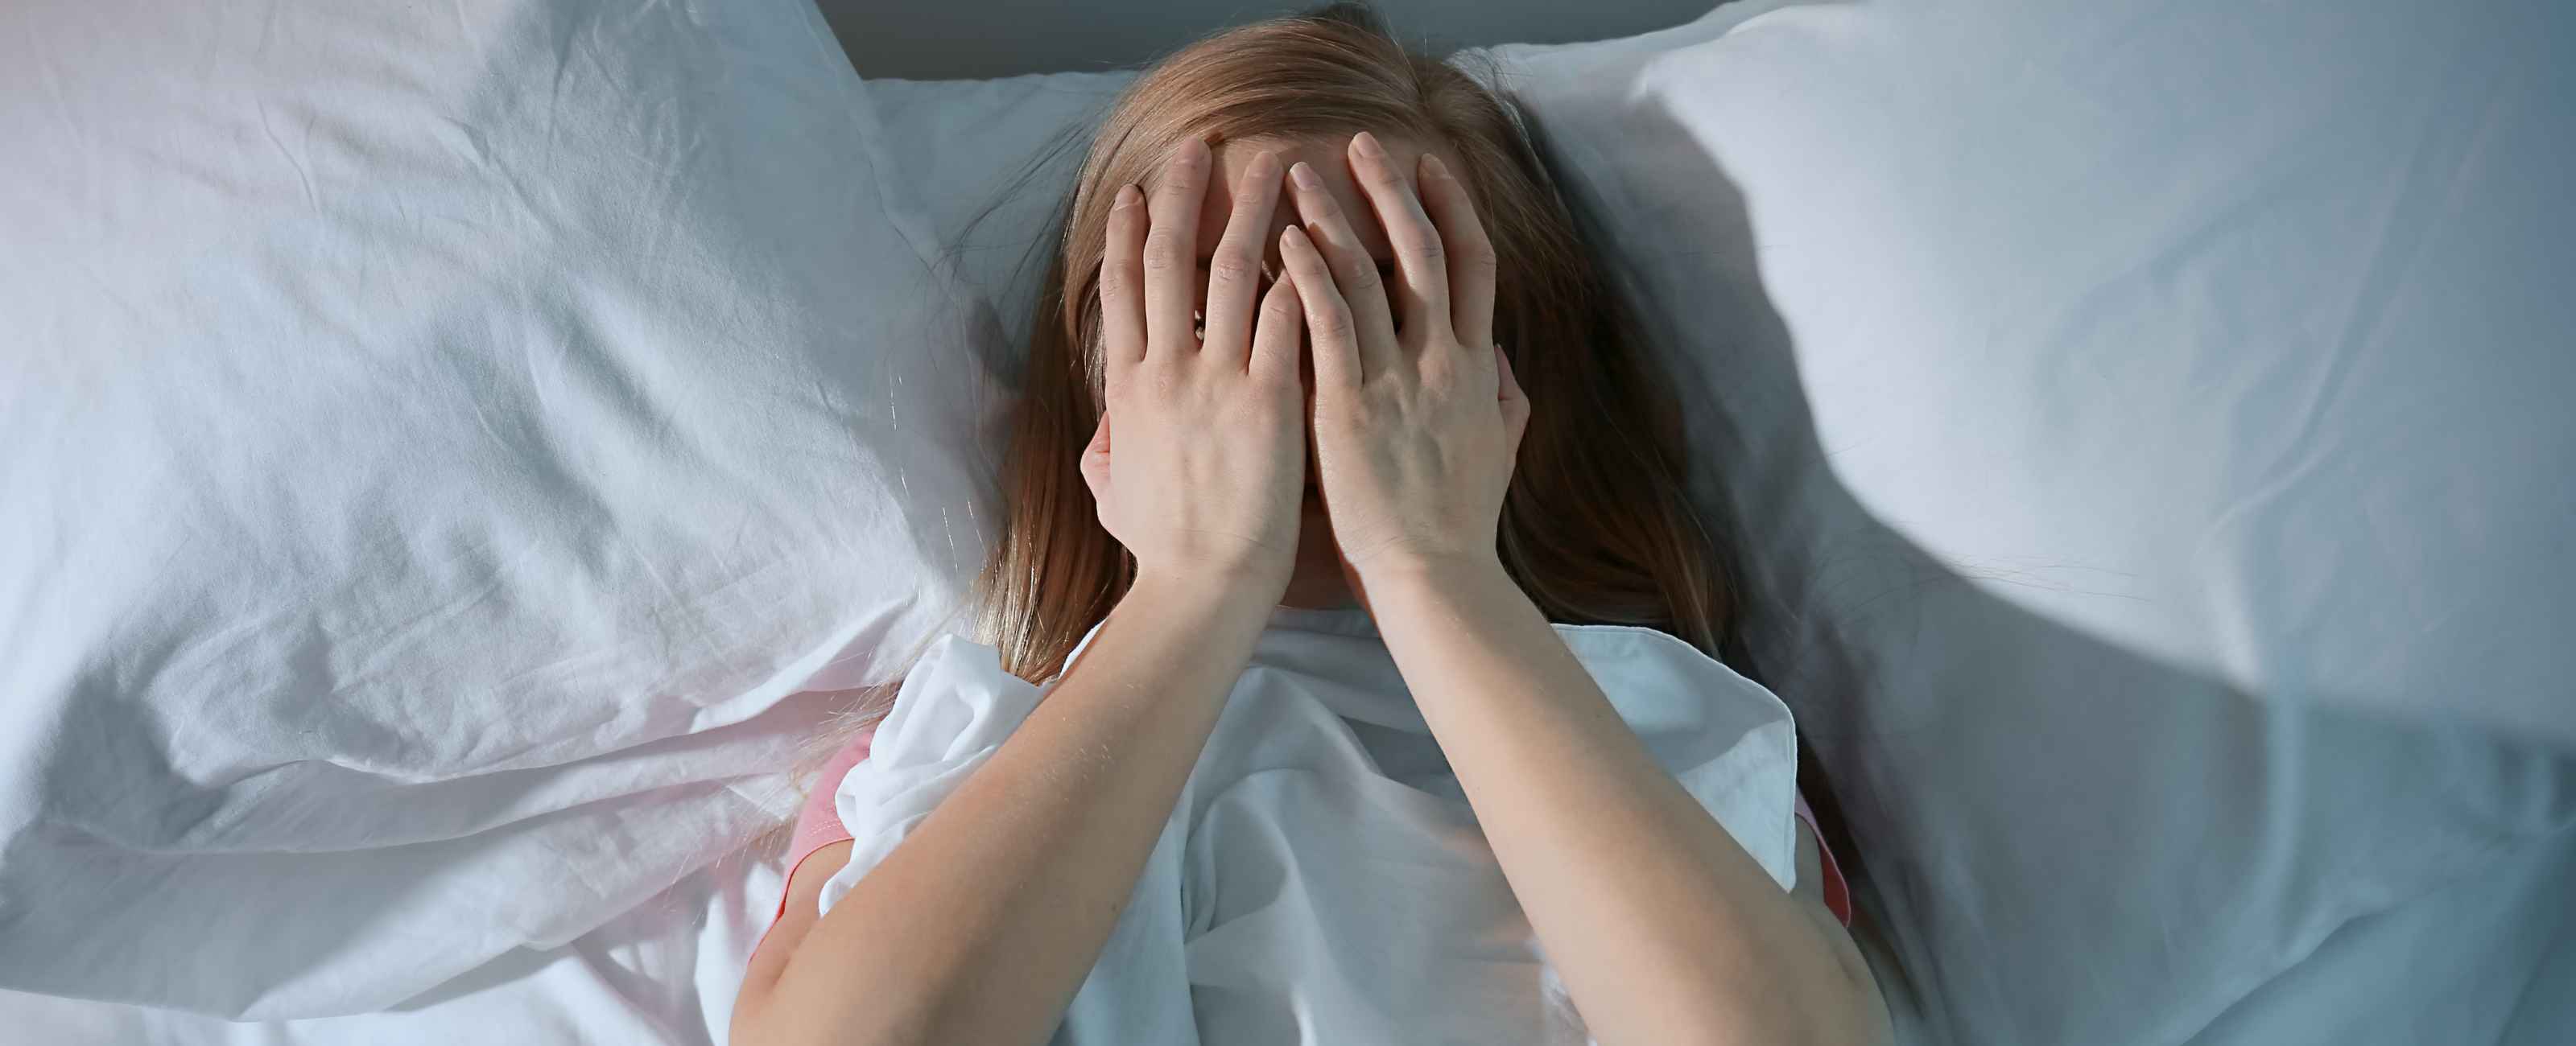 La paralysie du sommeil, de quoi s'agit-il et comment la prévenir ?